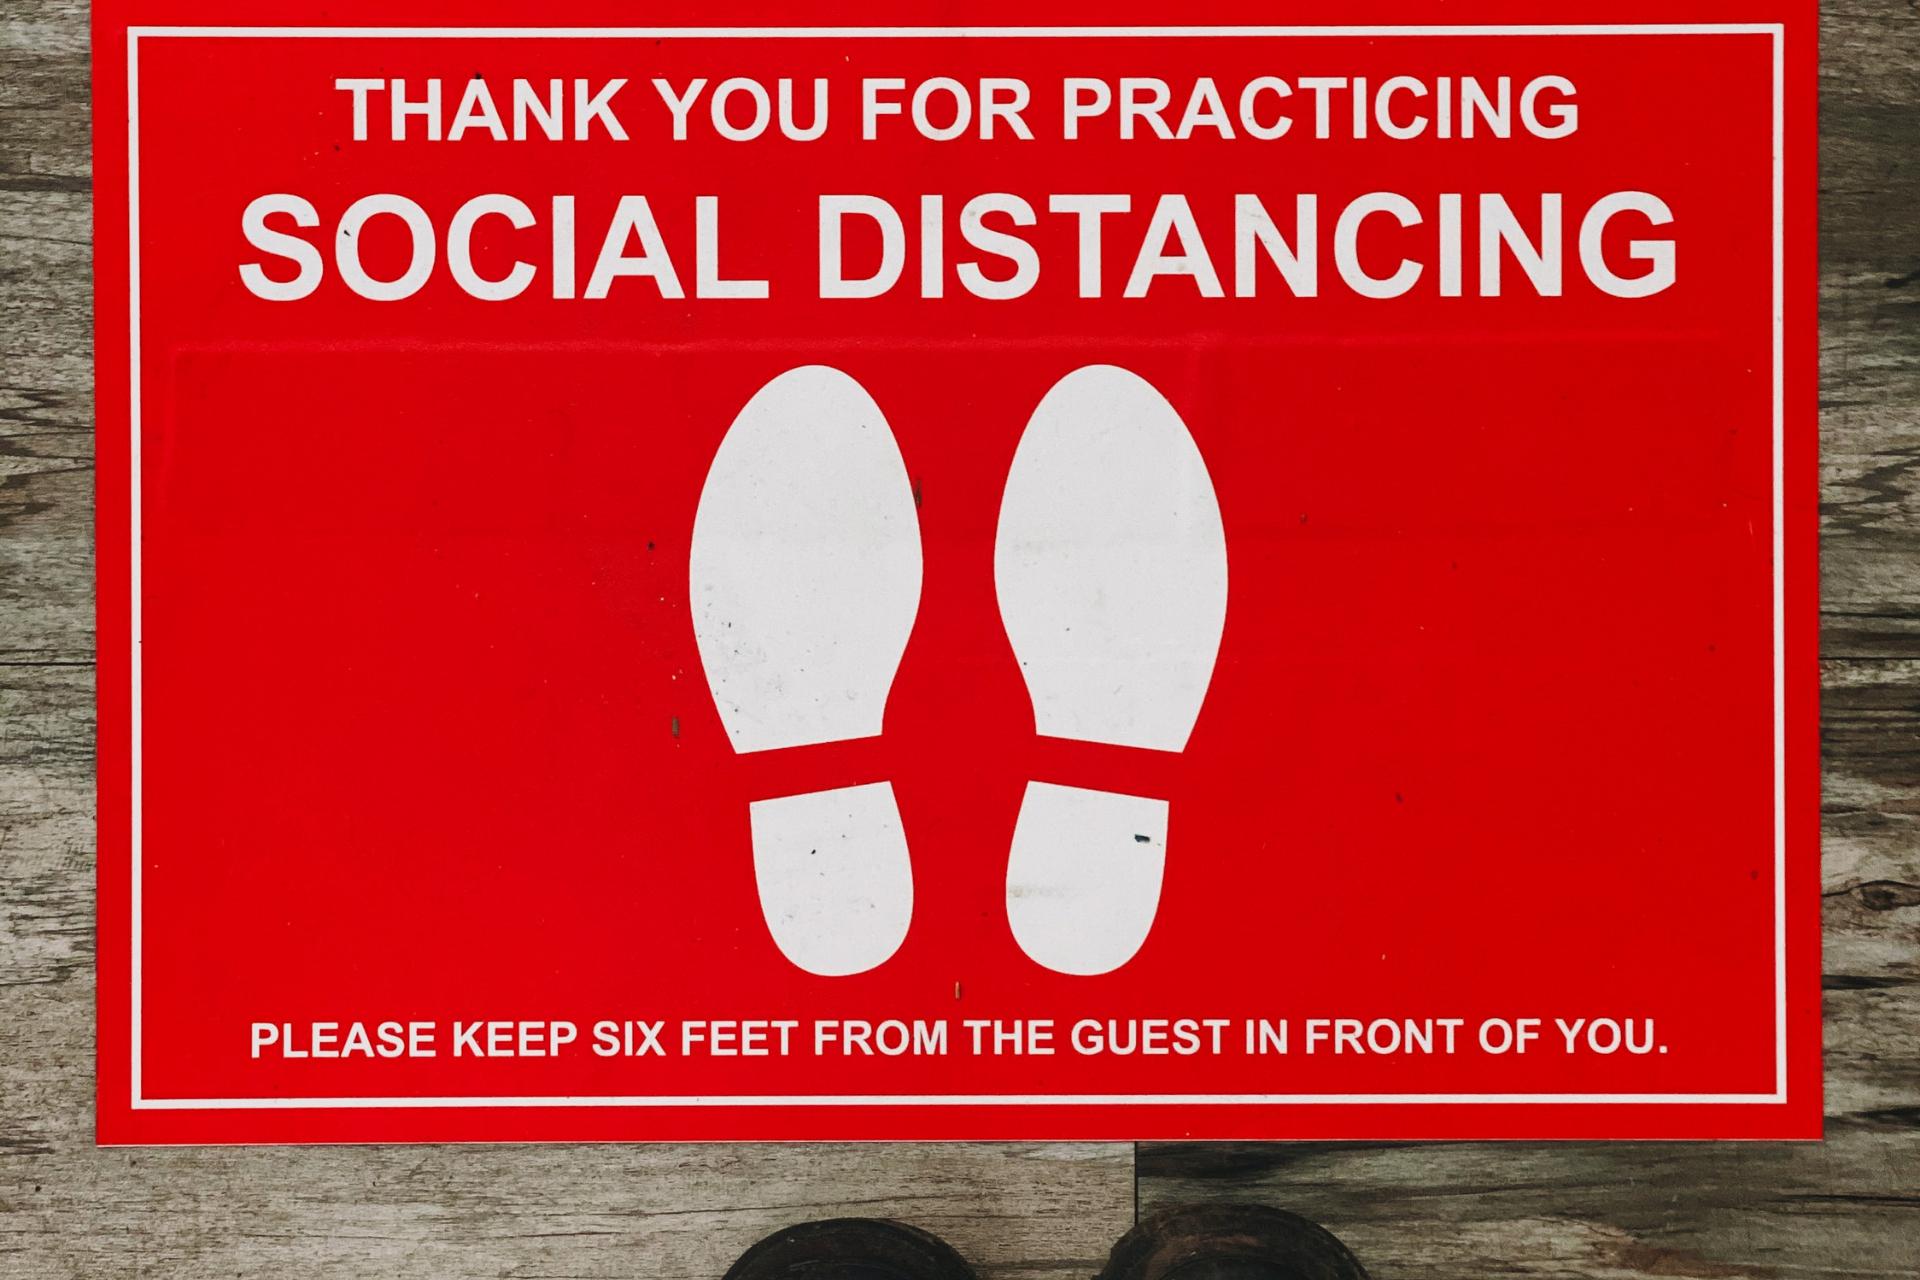 Social-Distancing-Schild auf dem Boden, um einen Abstand von 6 Fuß zwischen den Kunden einzuhalten